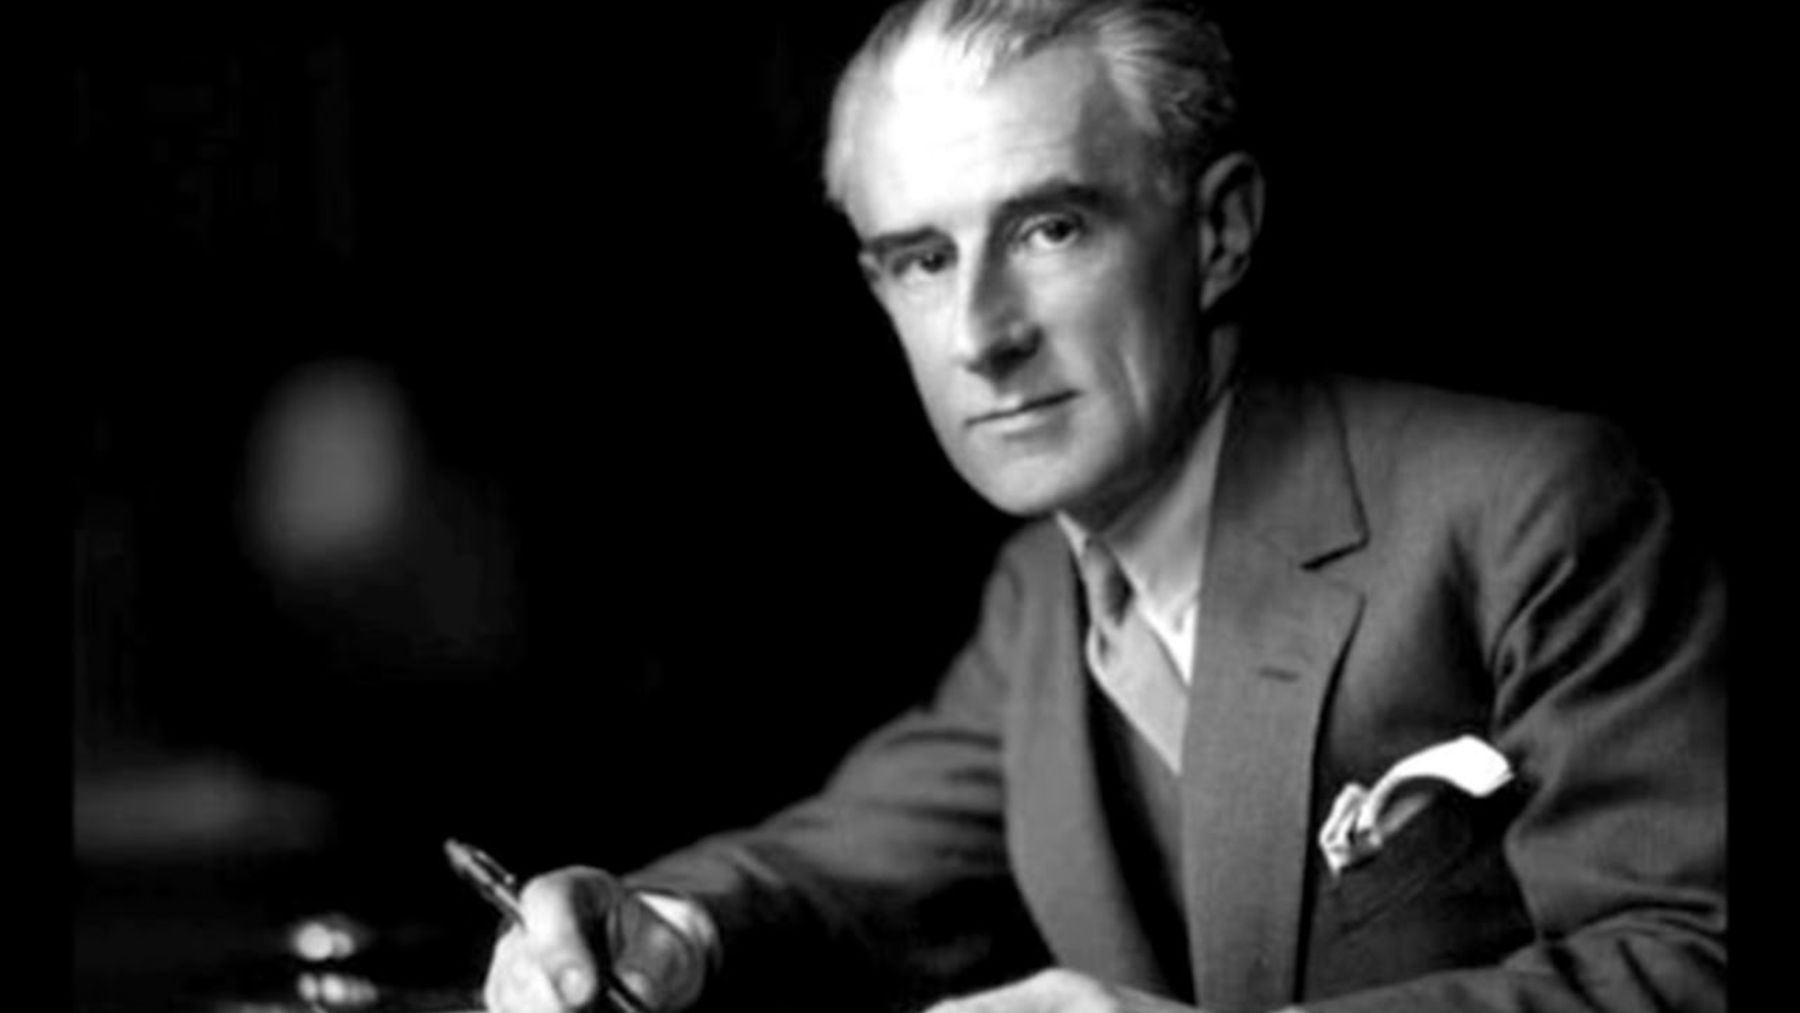 La historia detrás del famoso bolero de Ravel: curiosidades y características